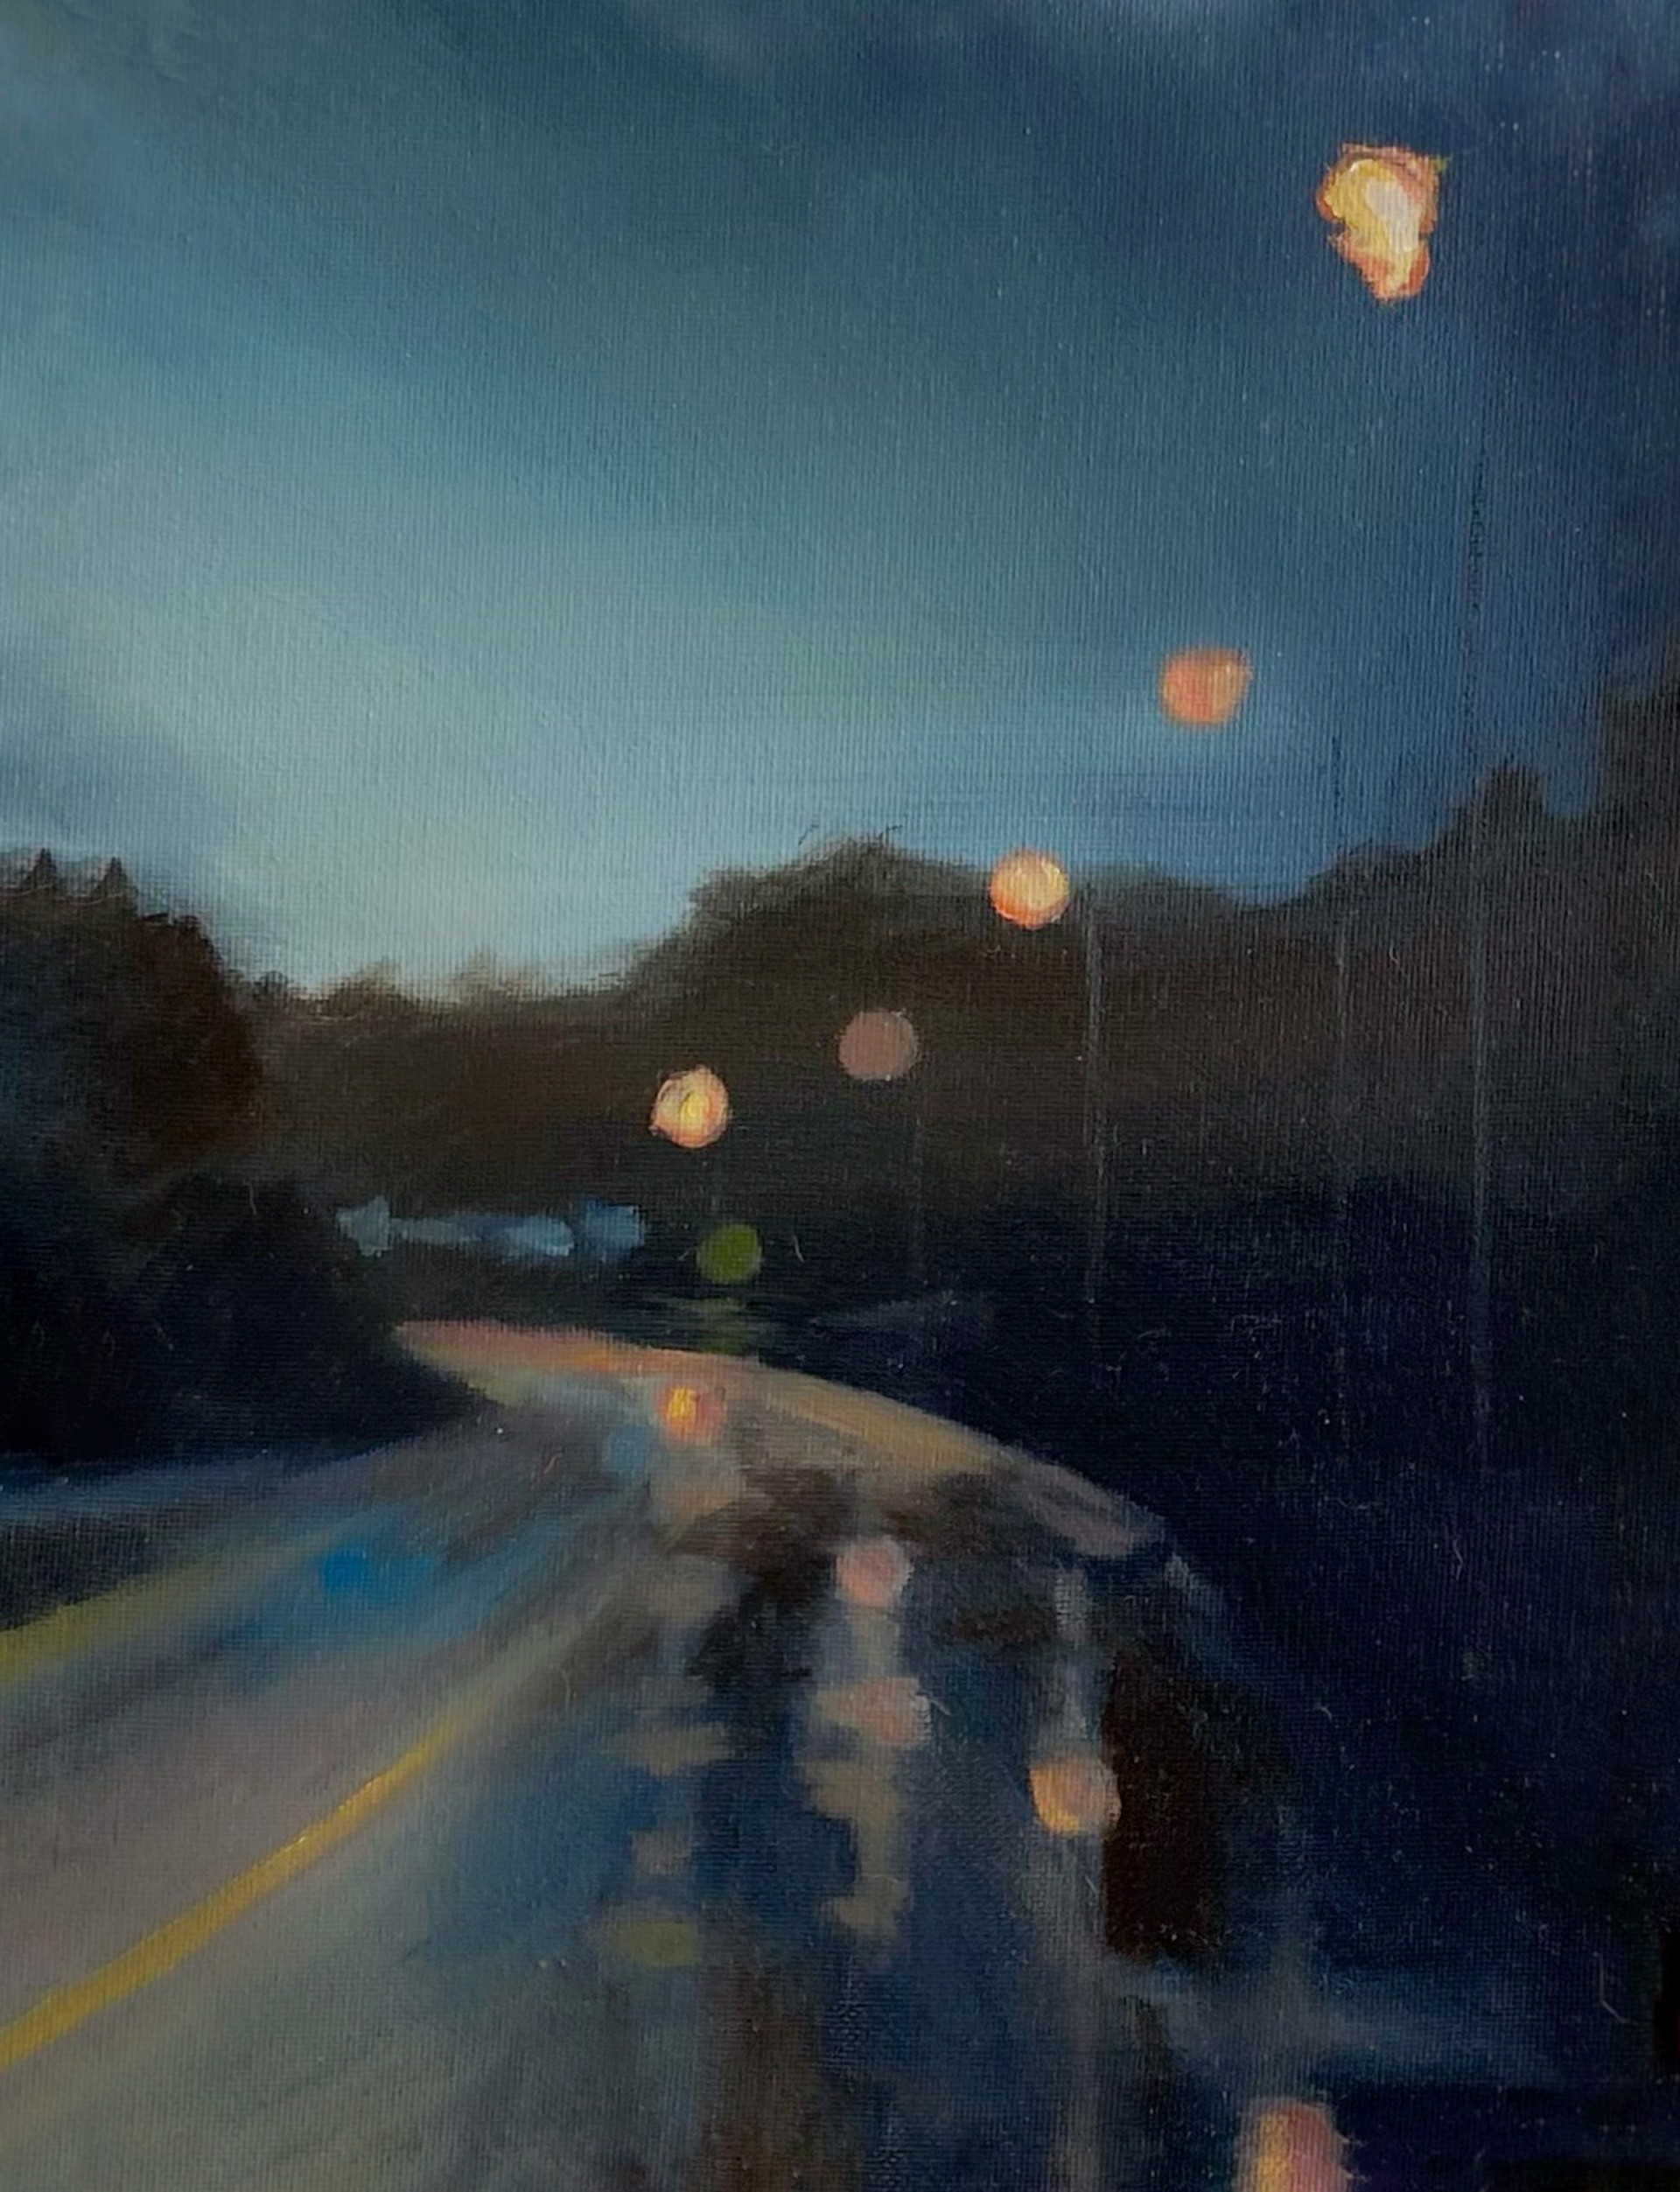 Rainy Night Dreams by Emma Ballou